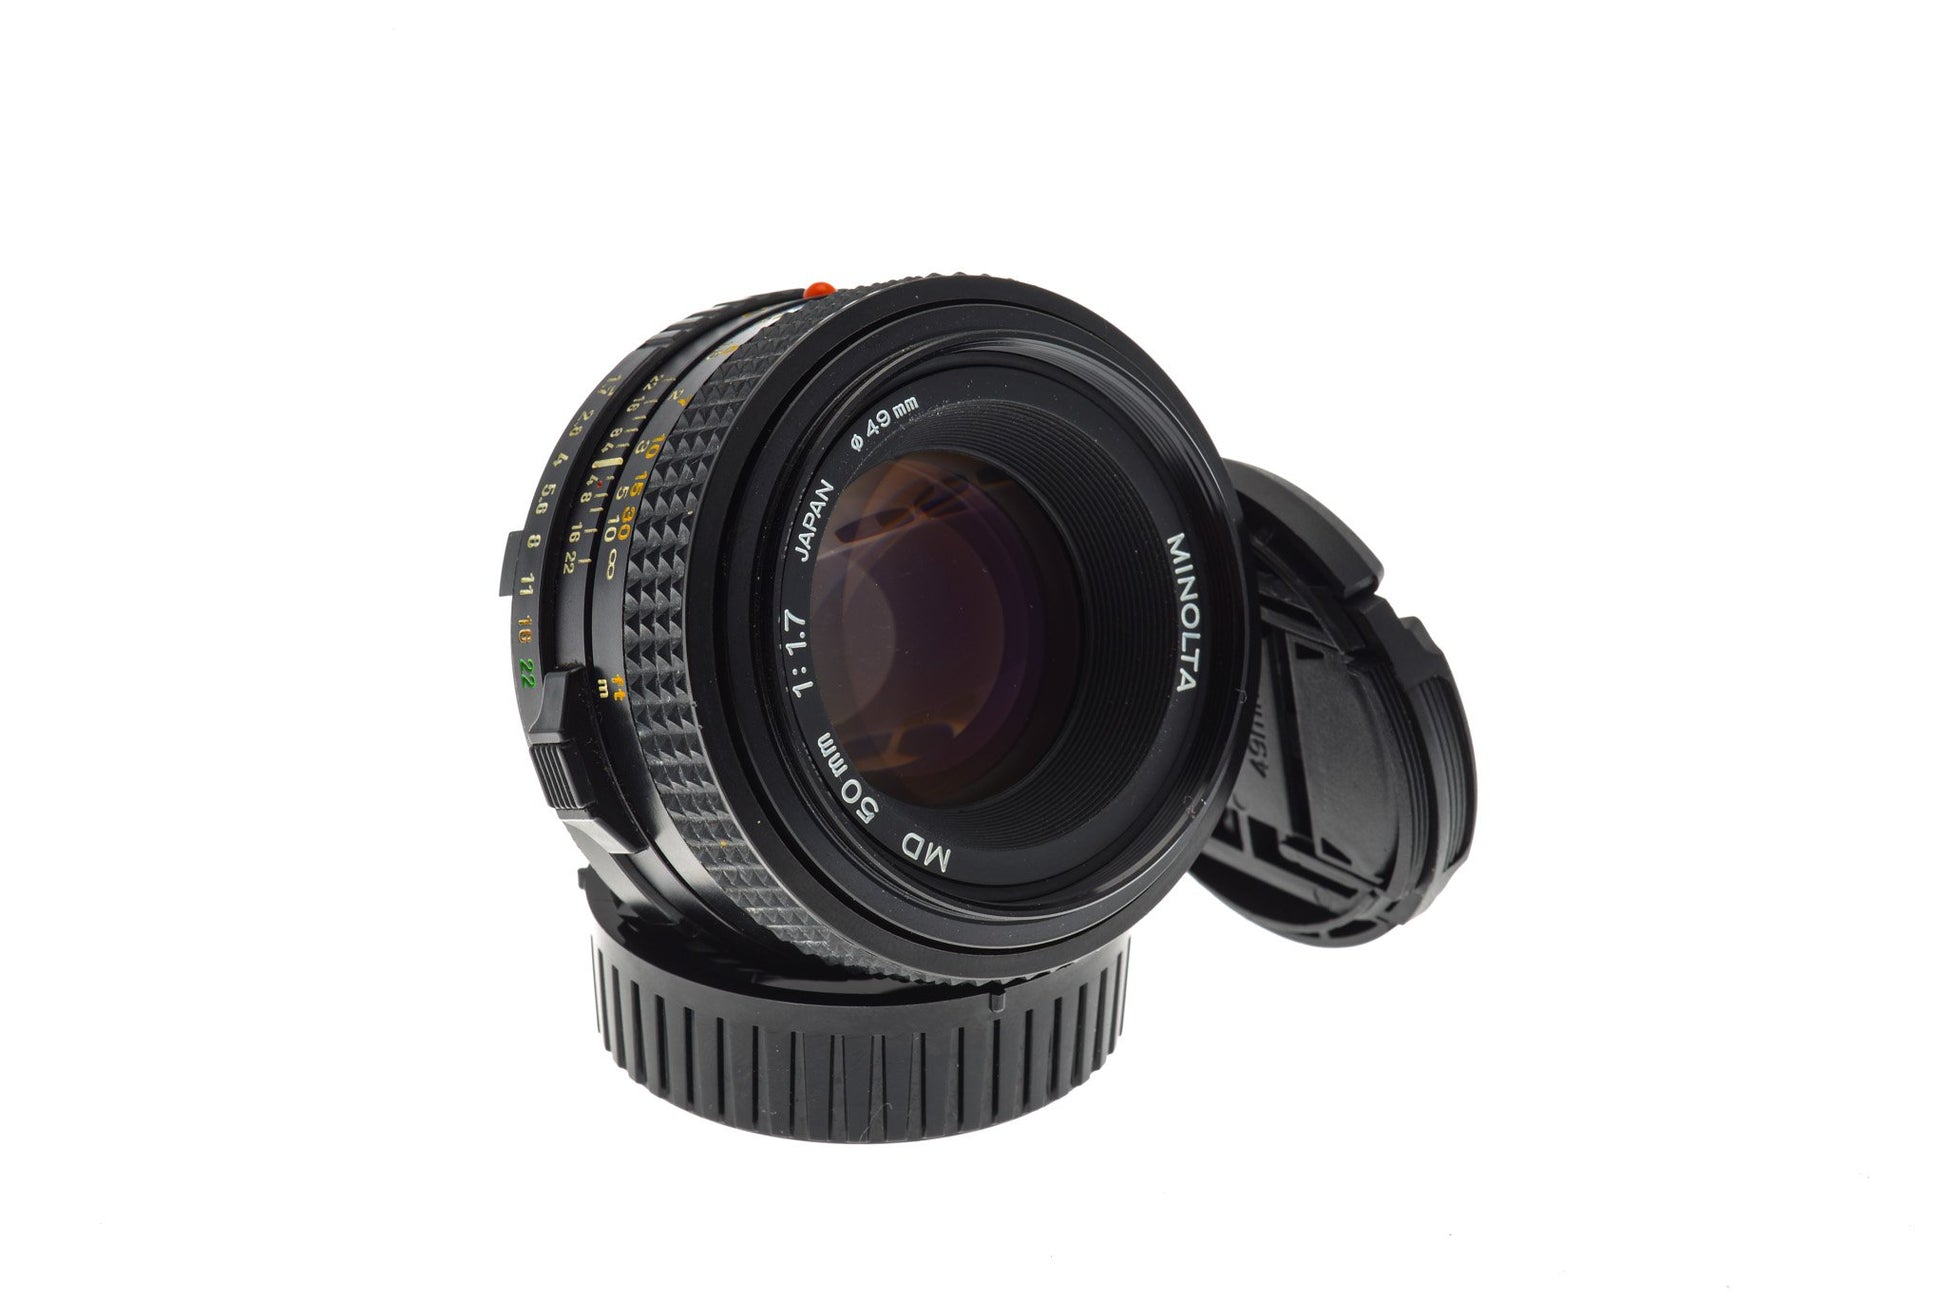 Minolta 50mm f1.7 MD - Lens